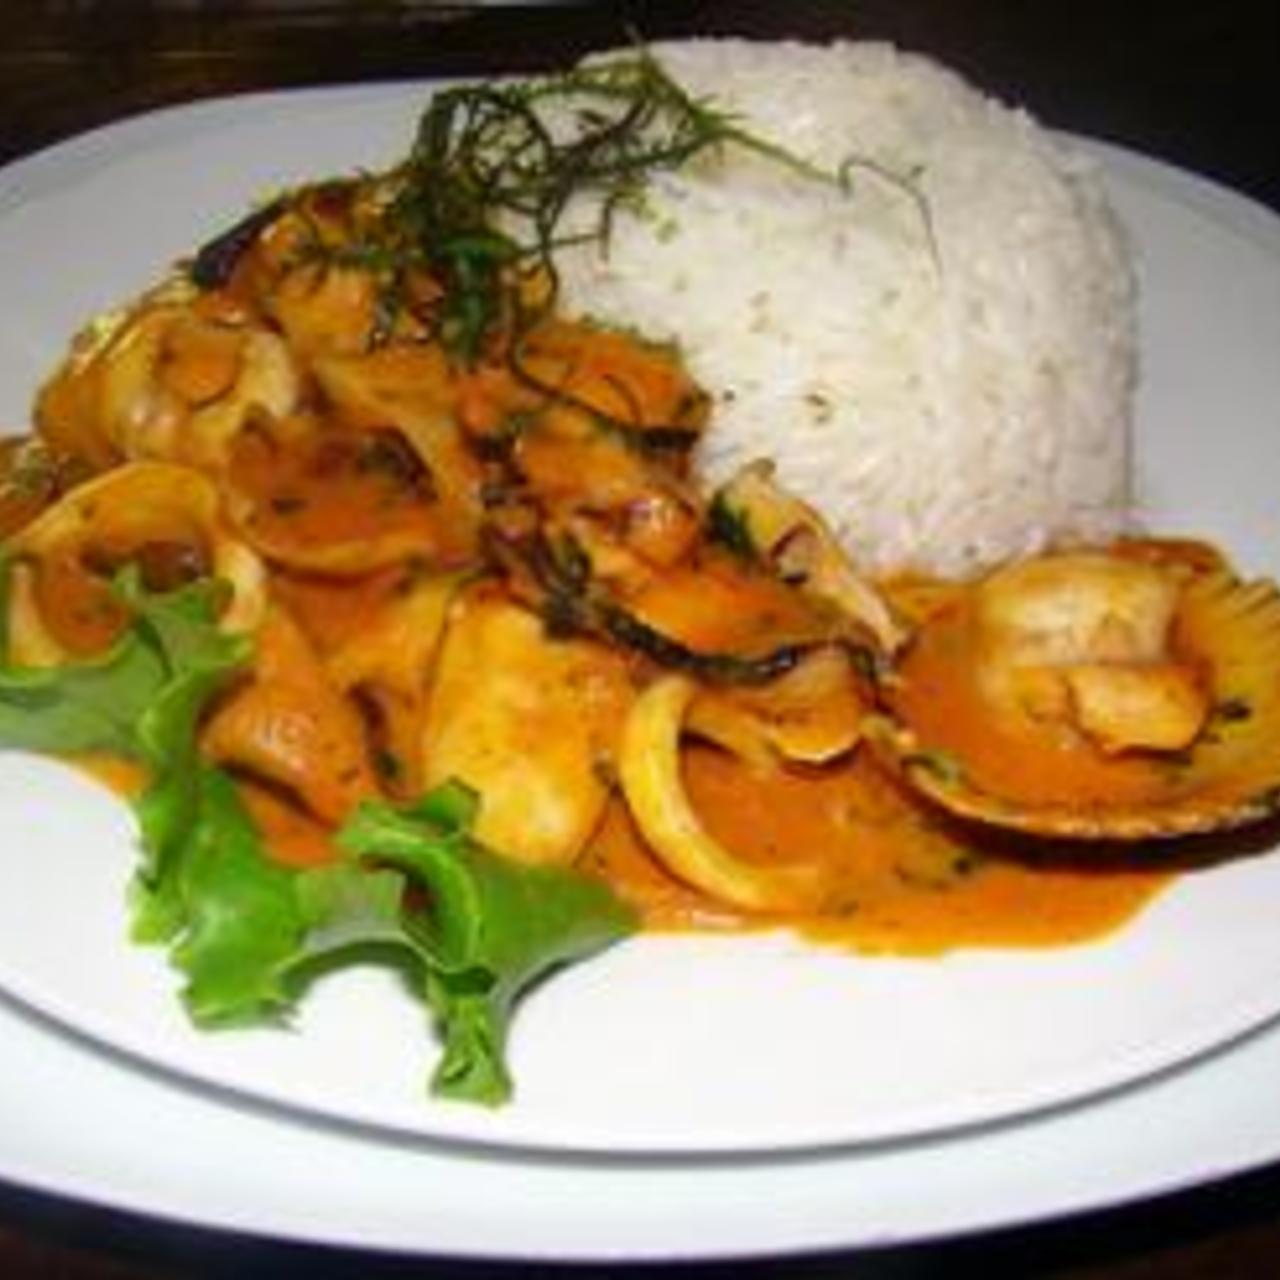 Picante De Mariscos Recipe: Spicy Seafood Delight!